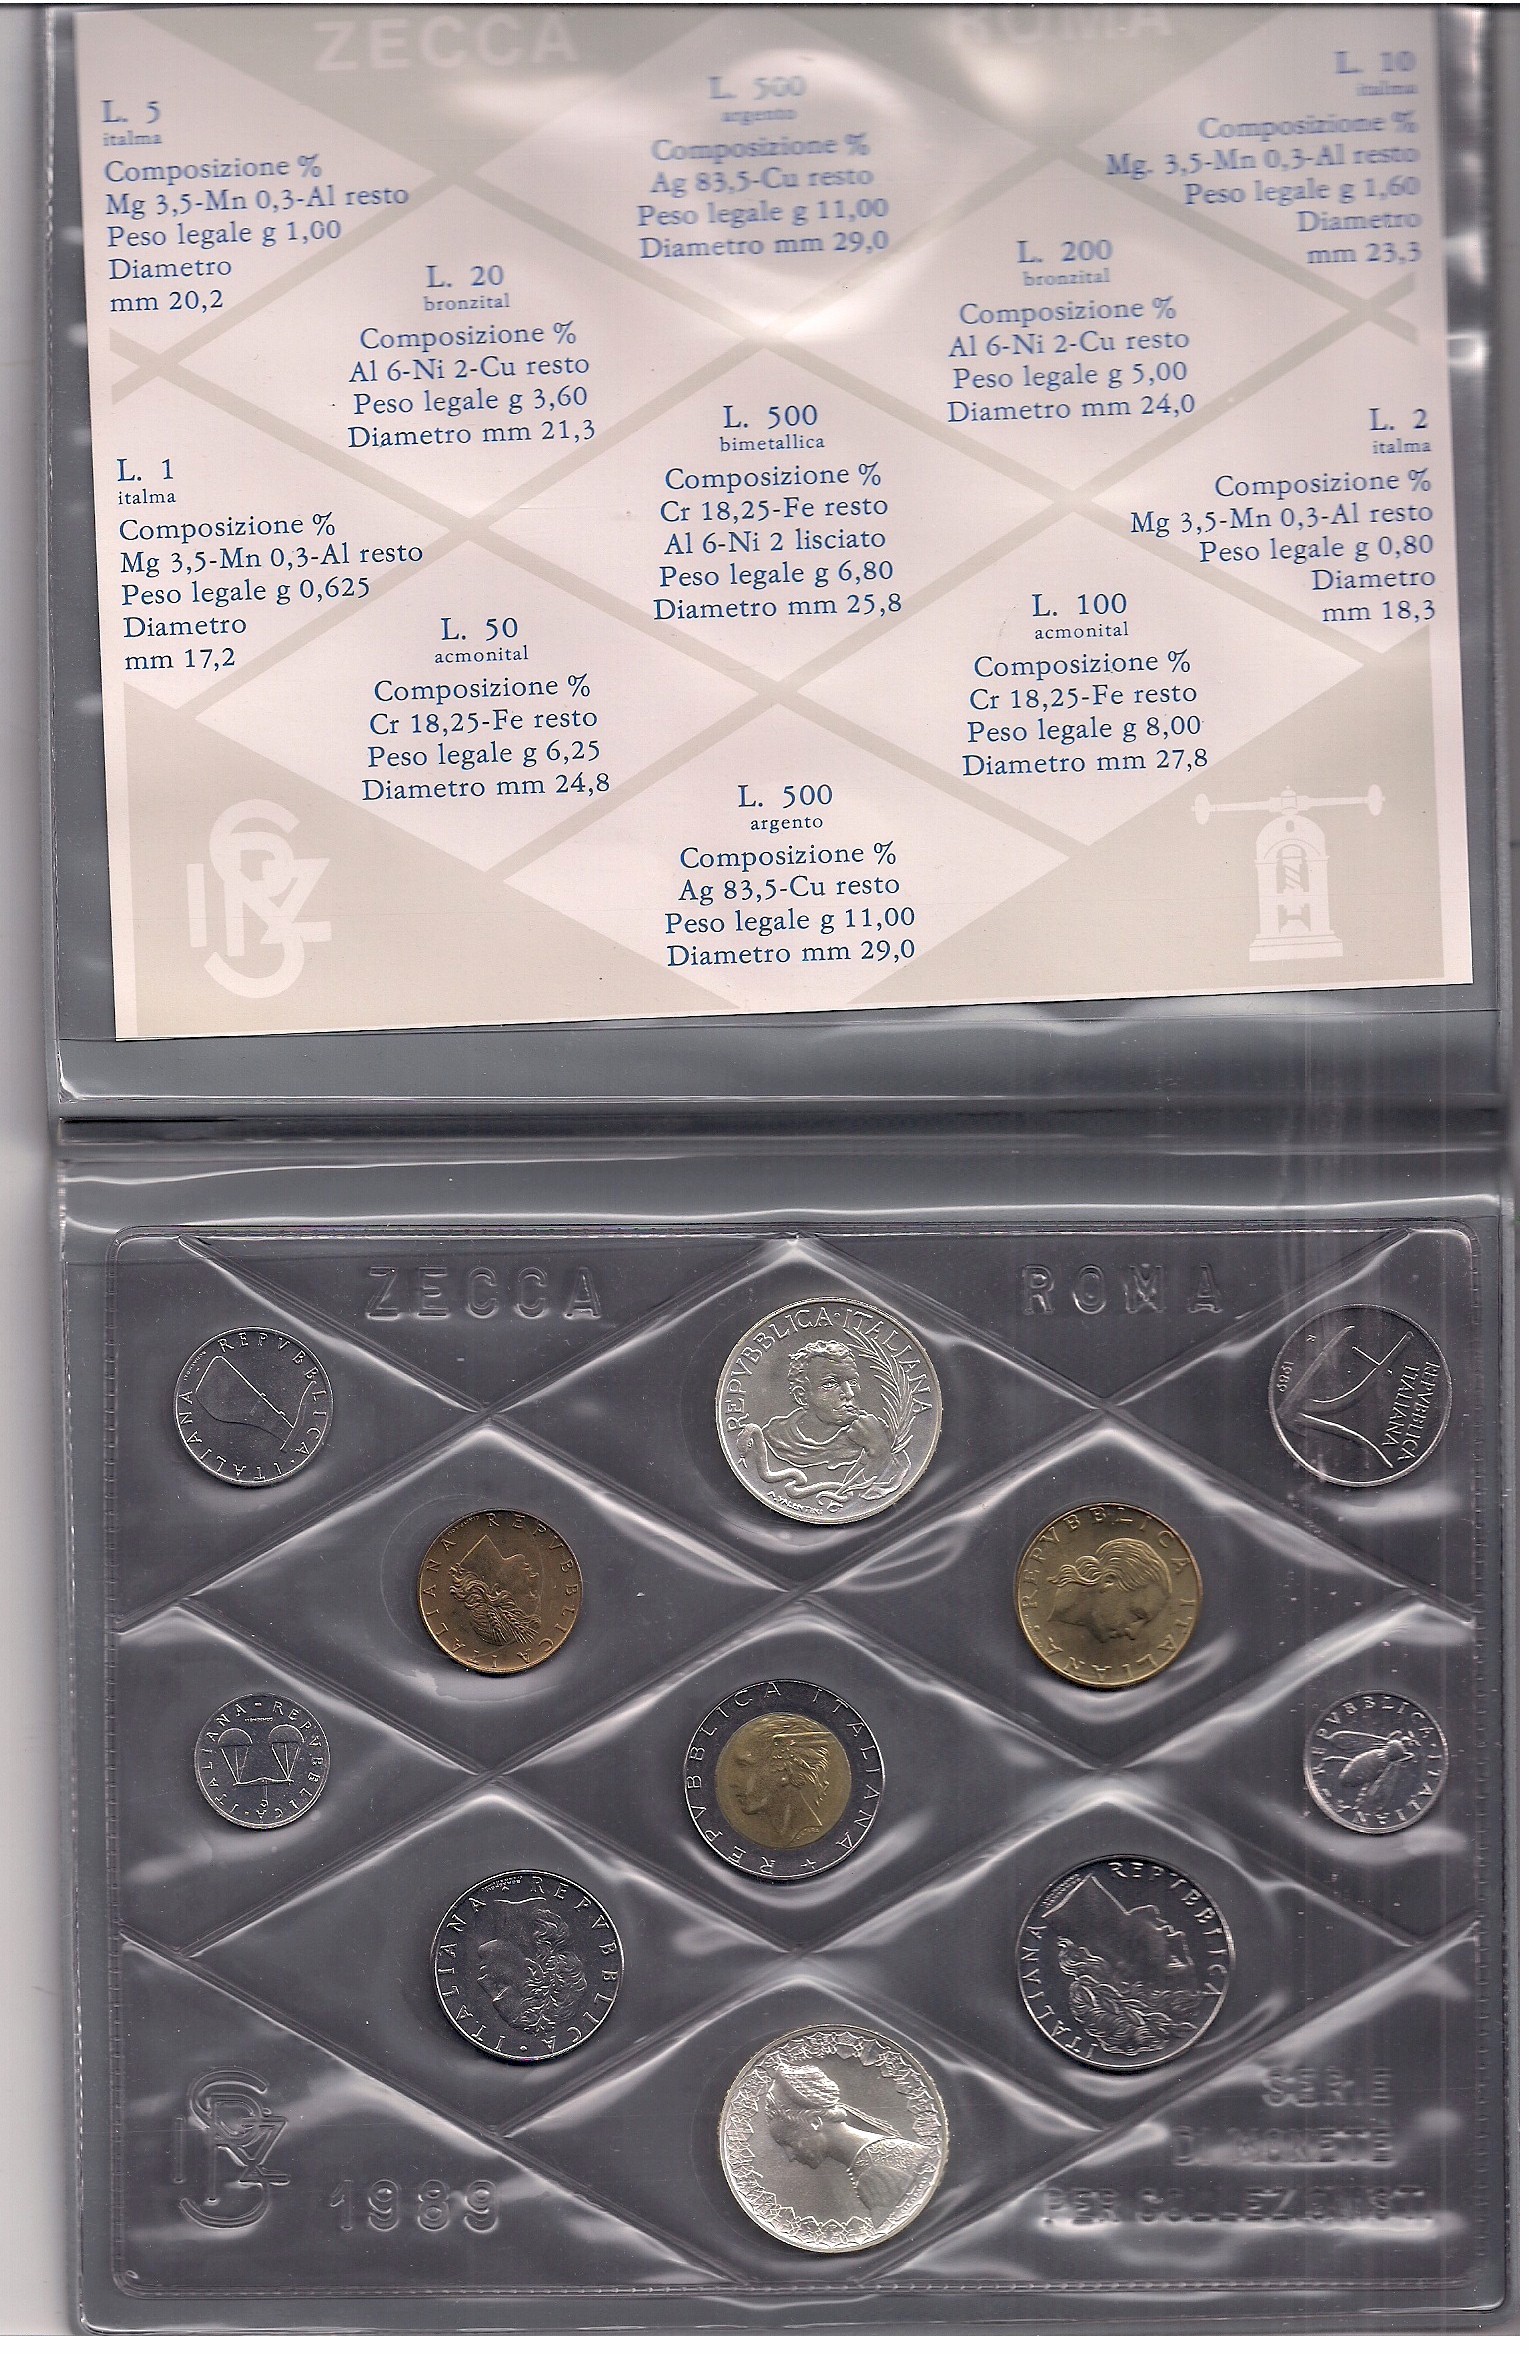  Serie completa di 11monete confezionate con L.500 "T. Campanella" - Lotto di 5 serie